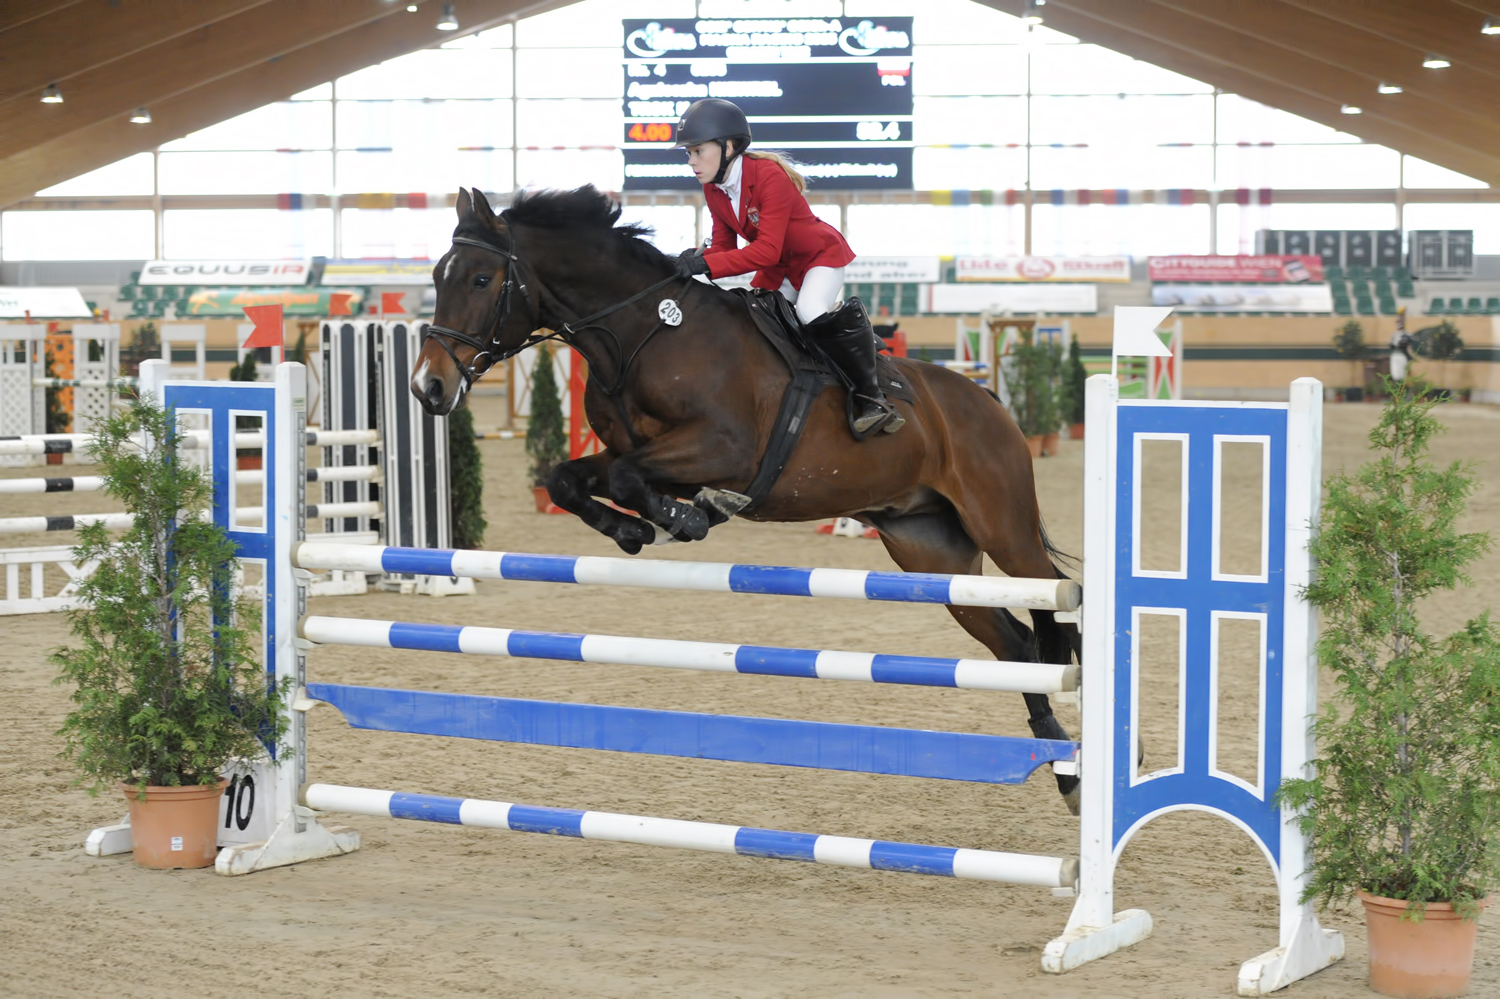 data/inhalt/events/2015/15154/Fotos horsesportsphoto Samstag/KiewrelAgnieszka_TrokK_BW07_CSI2Racino_chorsesportsphoto.eu.JPG